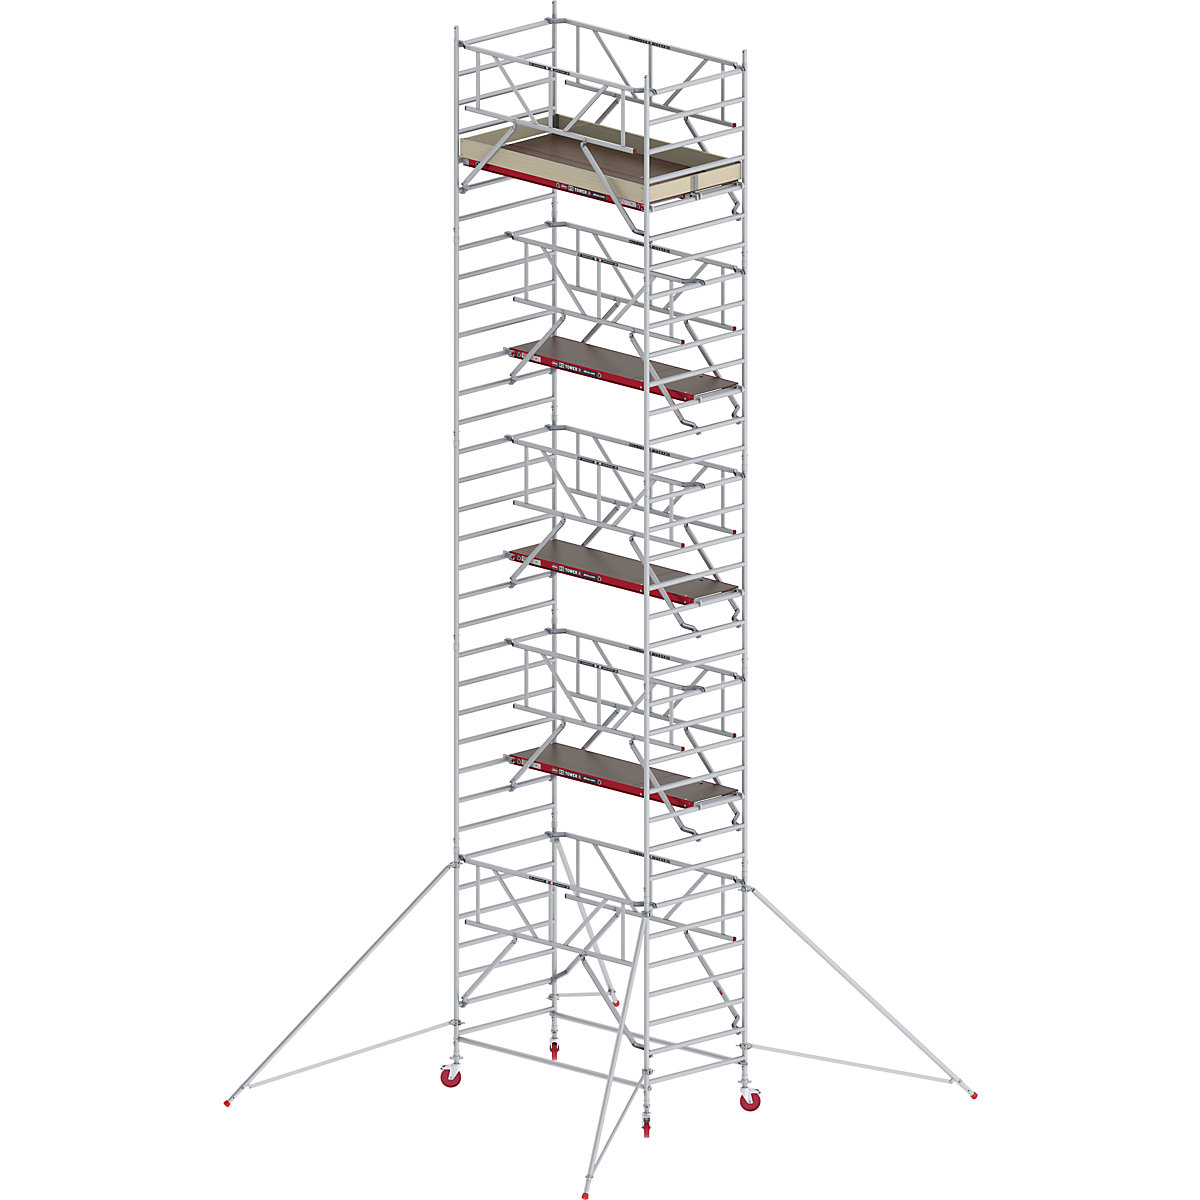 Schelă mobilă RS TOWER 42 lată cu Safe-Quick® – Altrex, platformă din lemn, lungime 2,45 m, înălțime de lucru 11,20 m-10